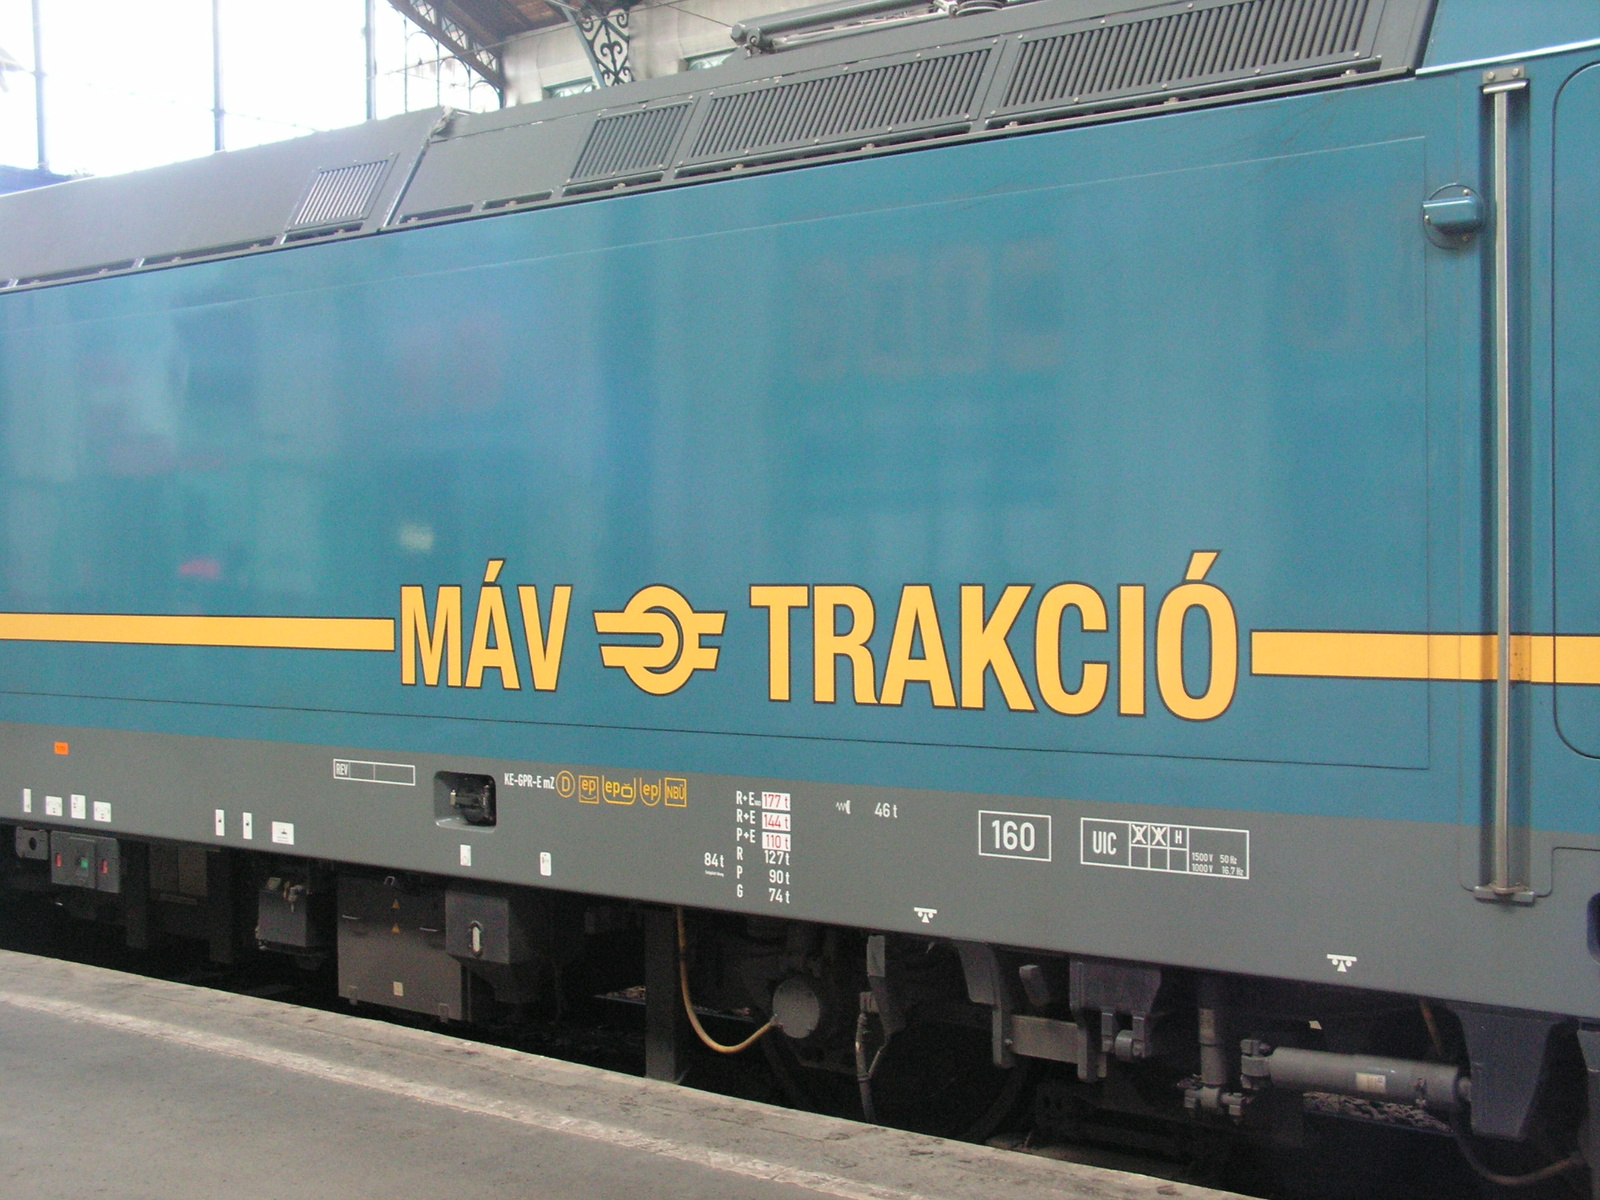 H-MÁVTR TRAXX 480 001, SzG3